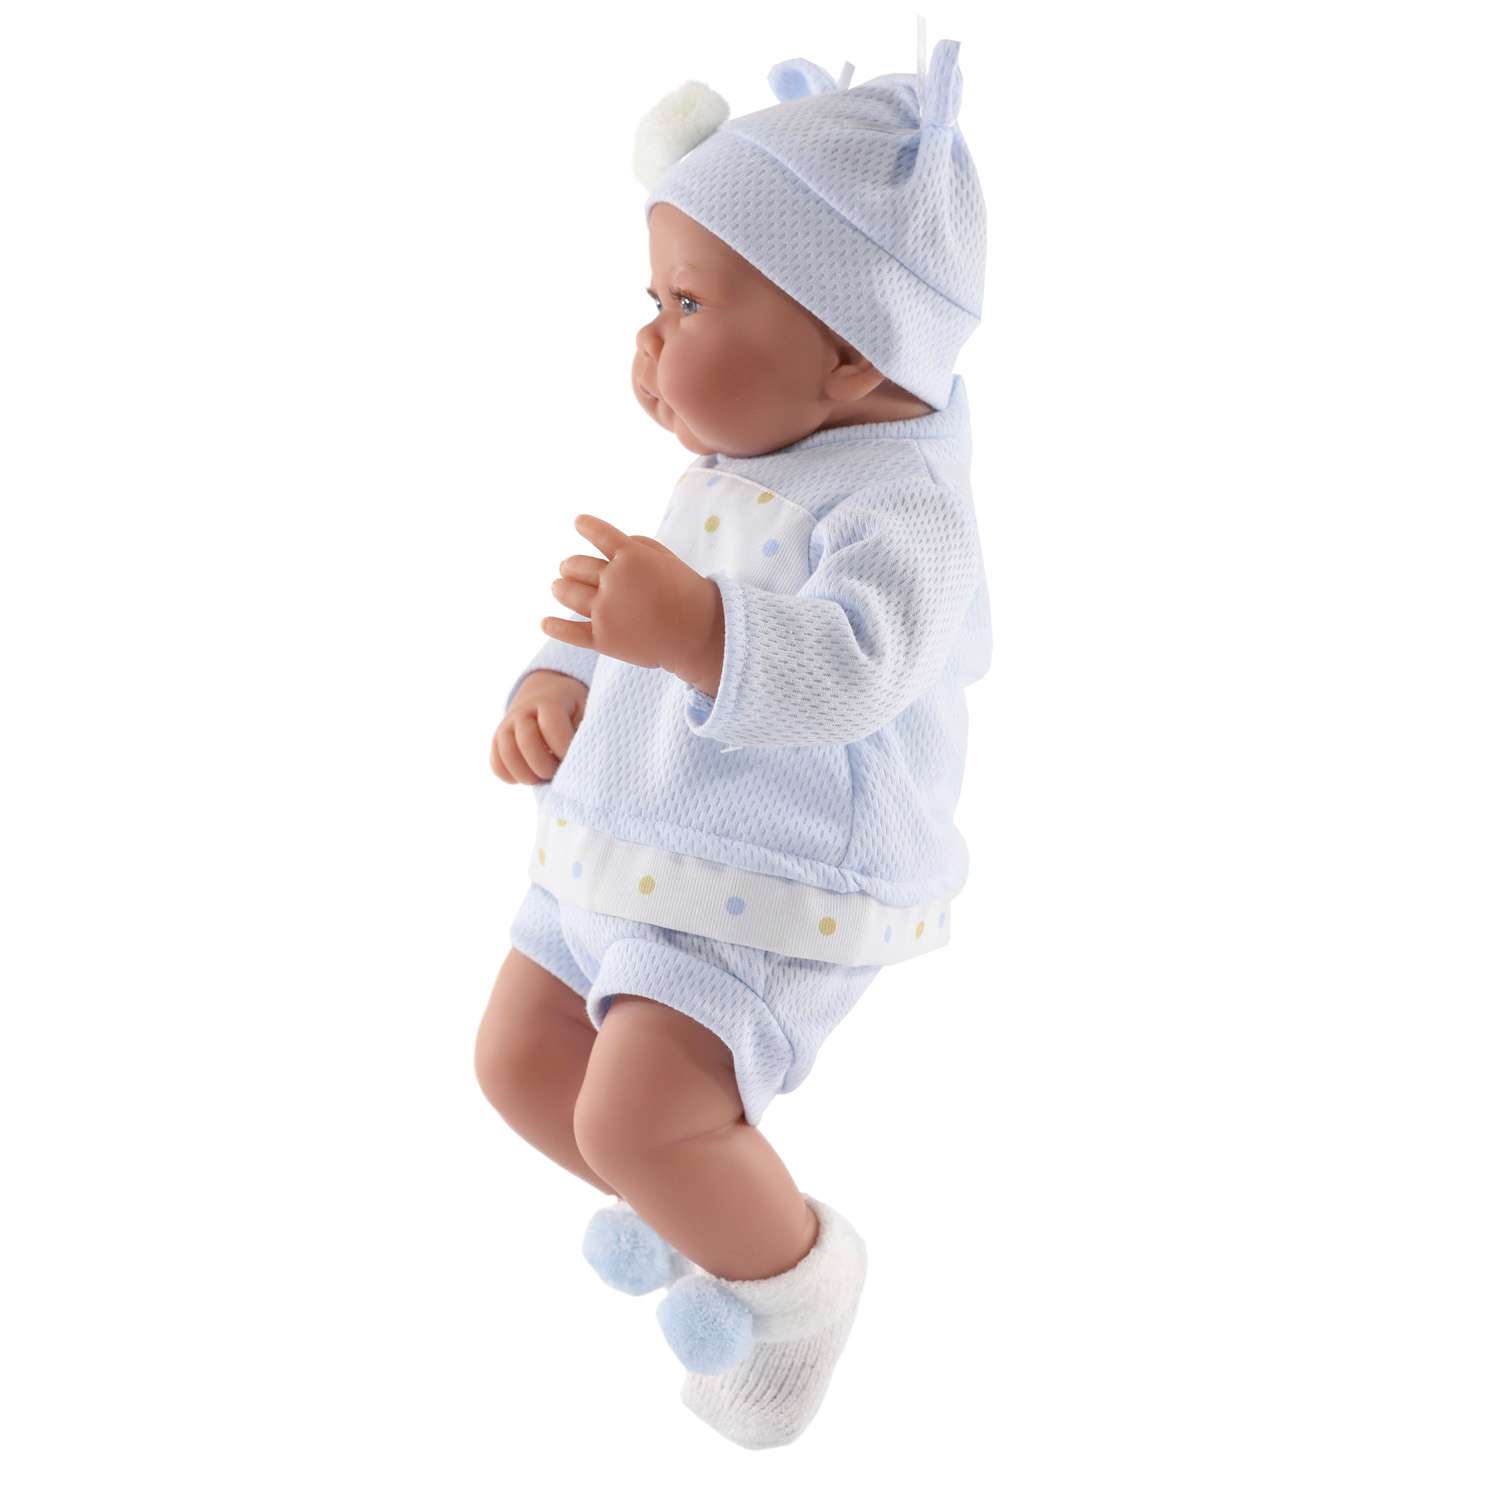 Кукла младенец Antonio Juan Реборн Дольче в голубом 40 см мягконабивная 3391B - фото 5